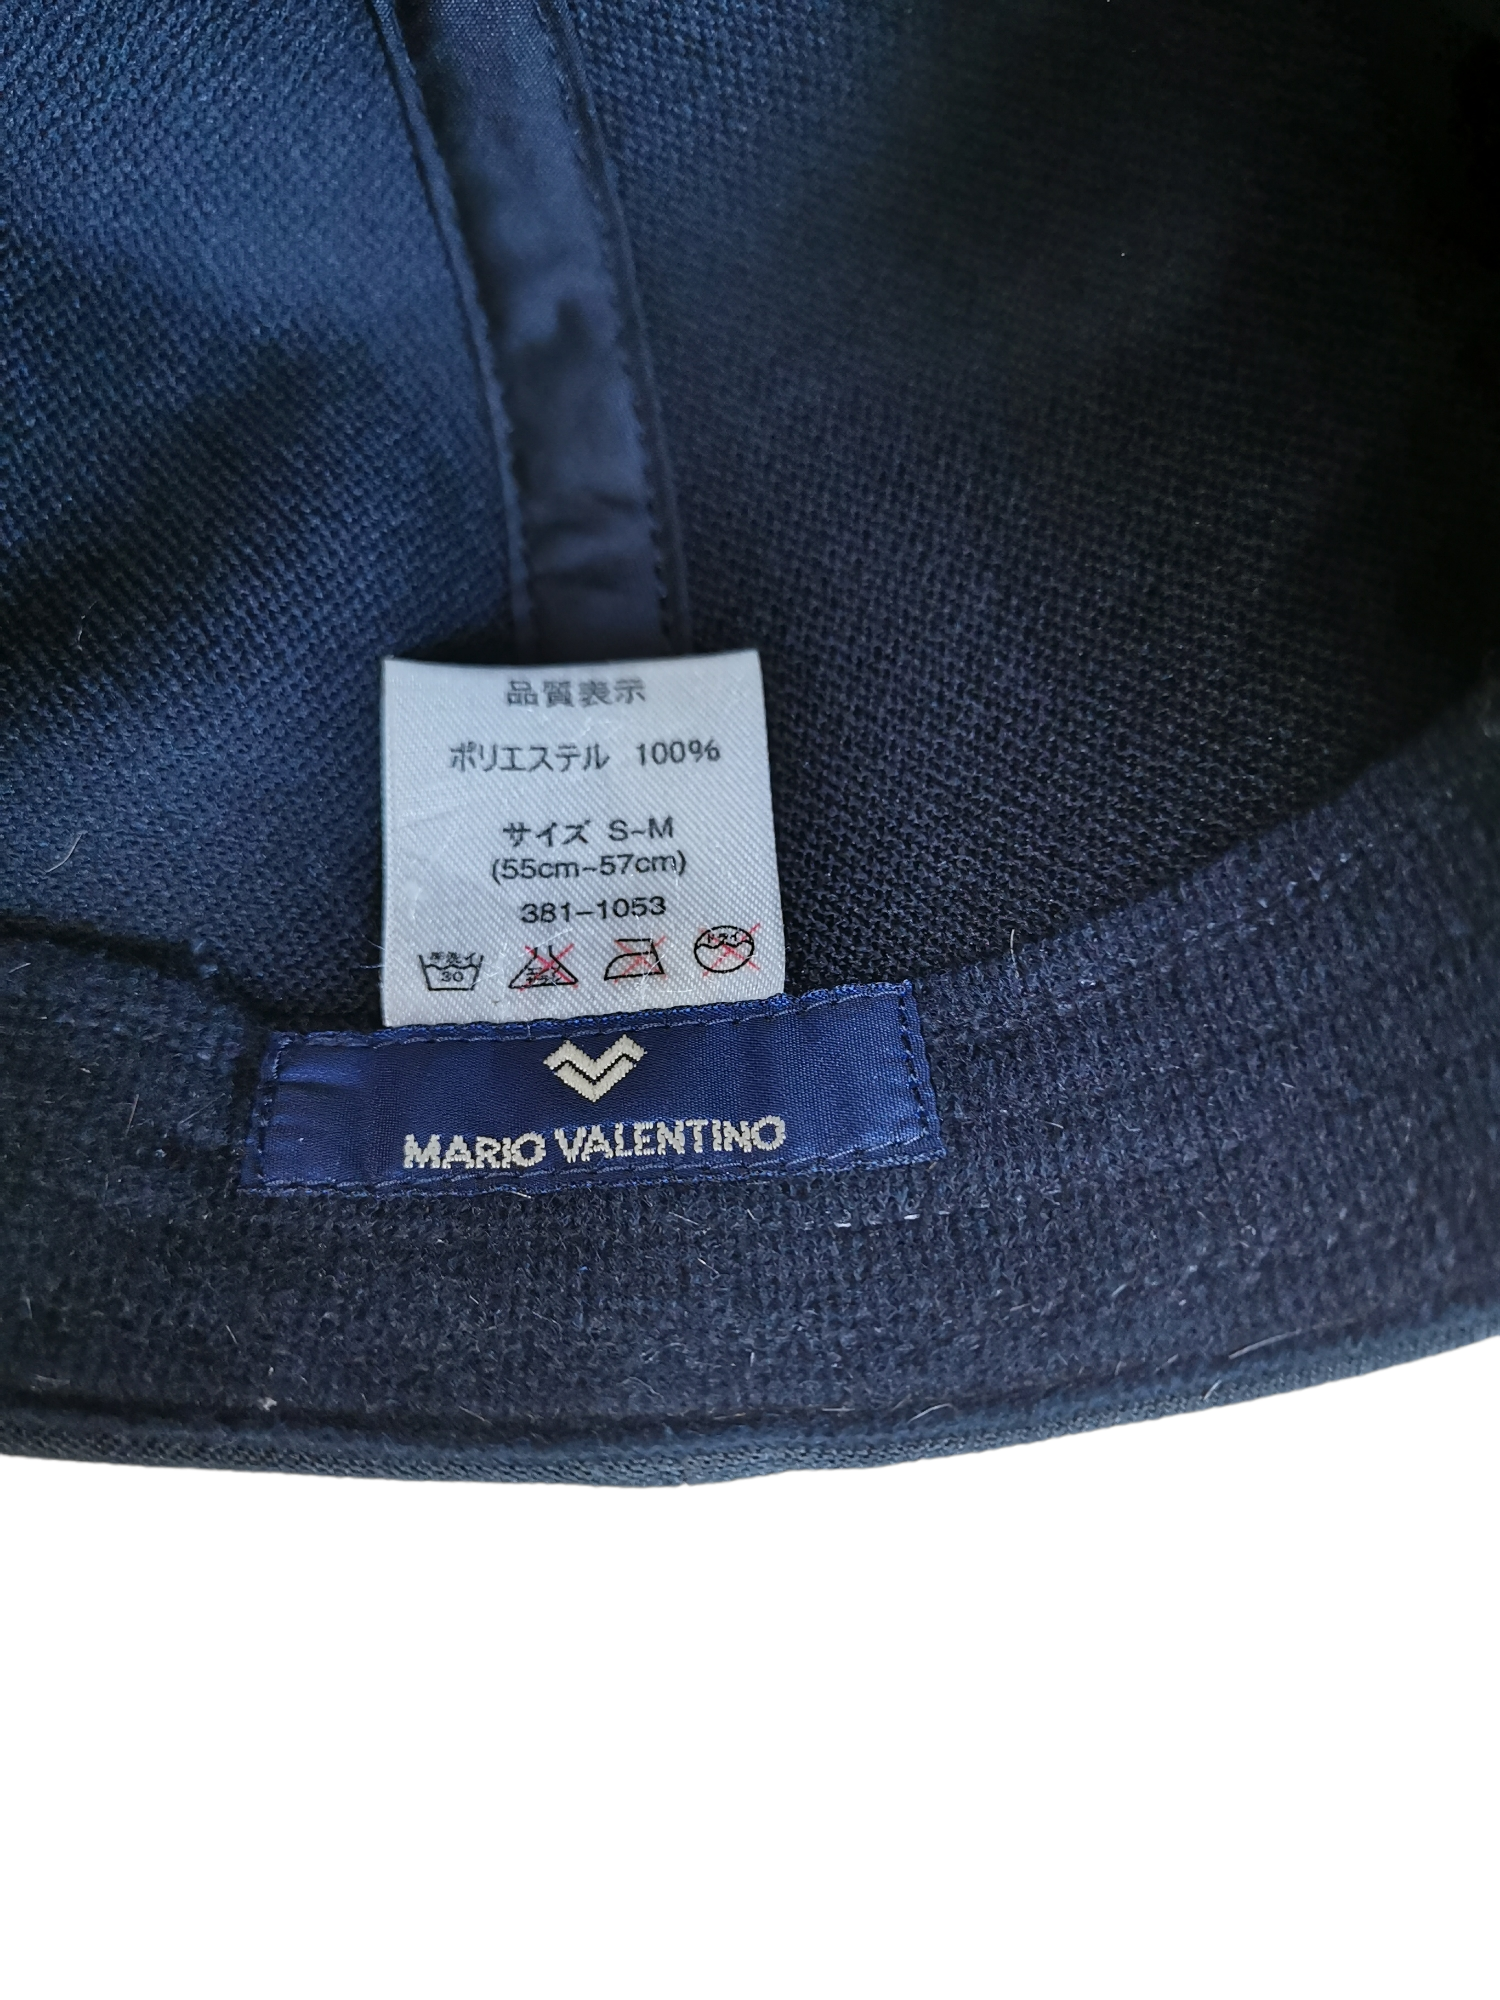 MARIO VALENTINO DESIGNER HAT CAP - 5